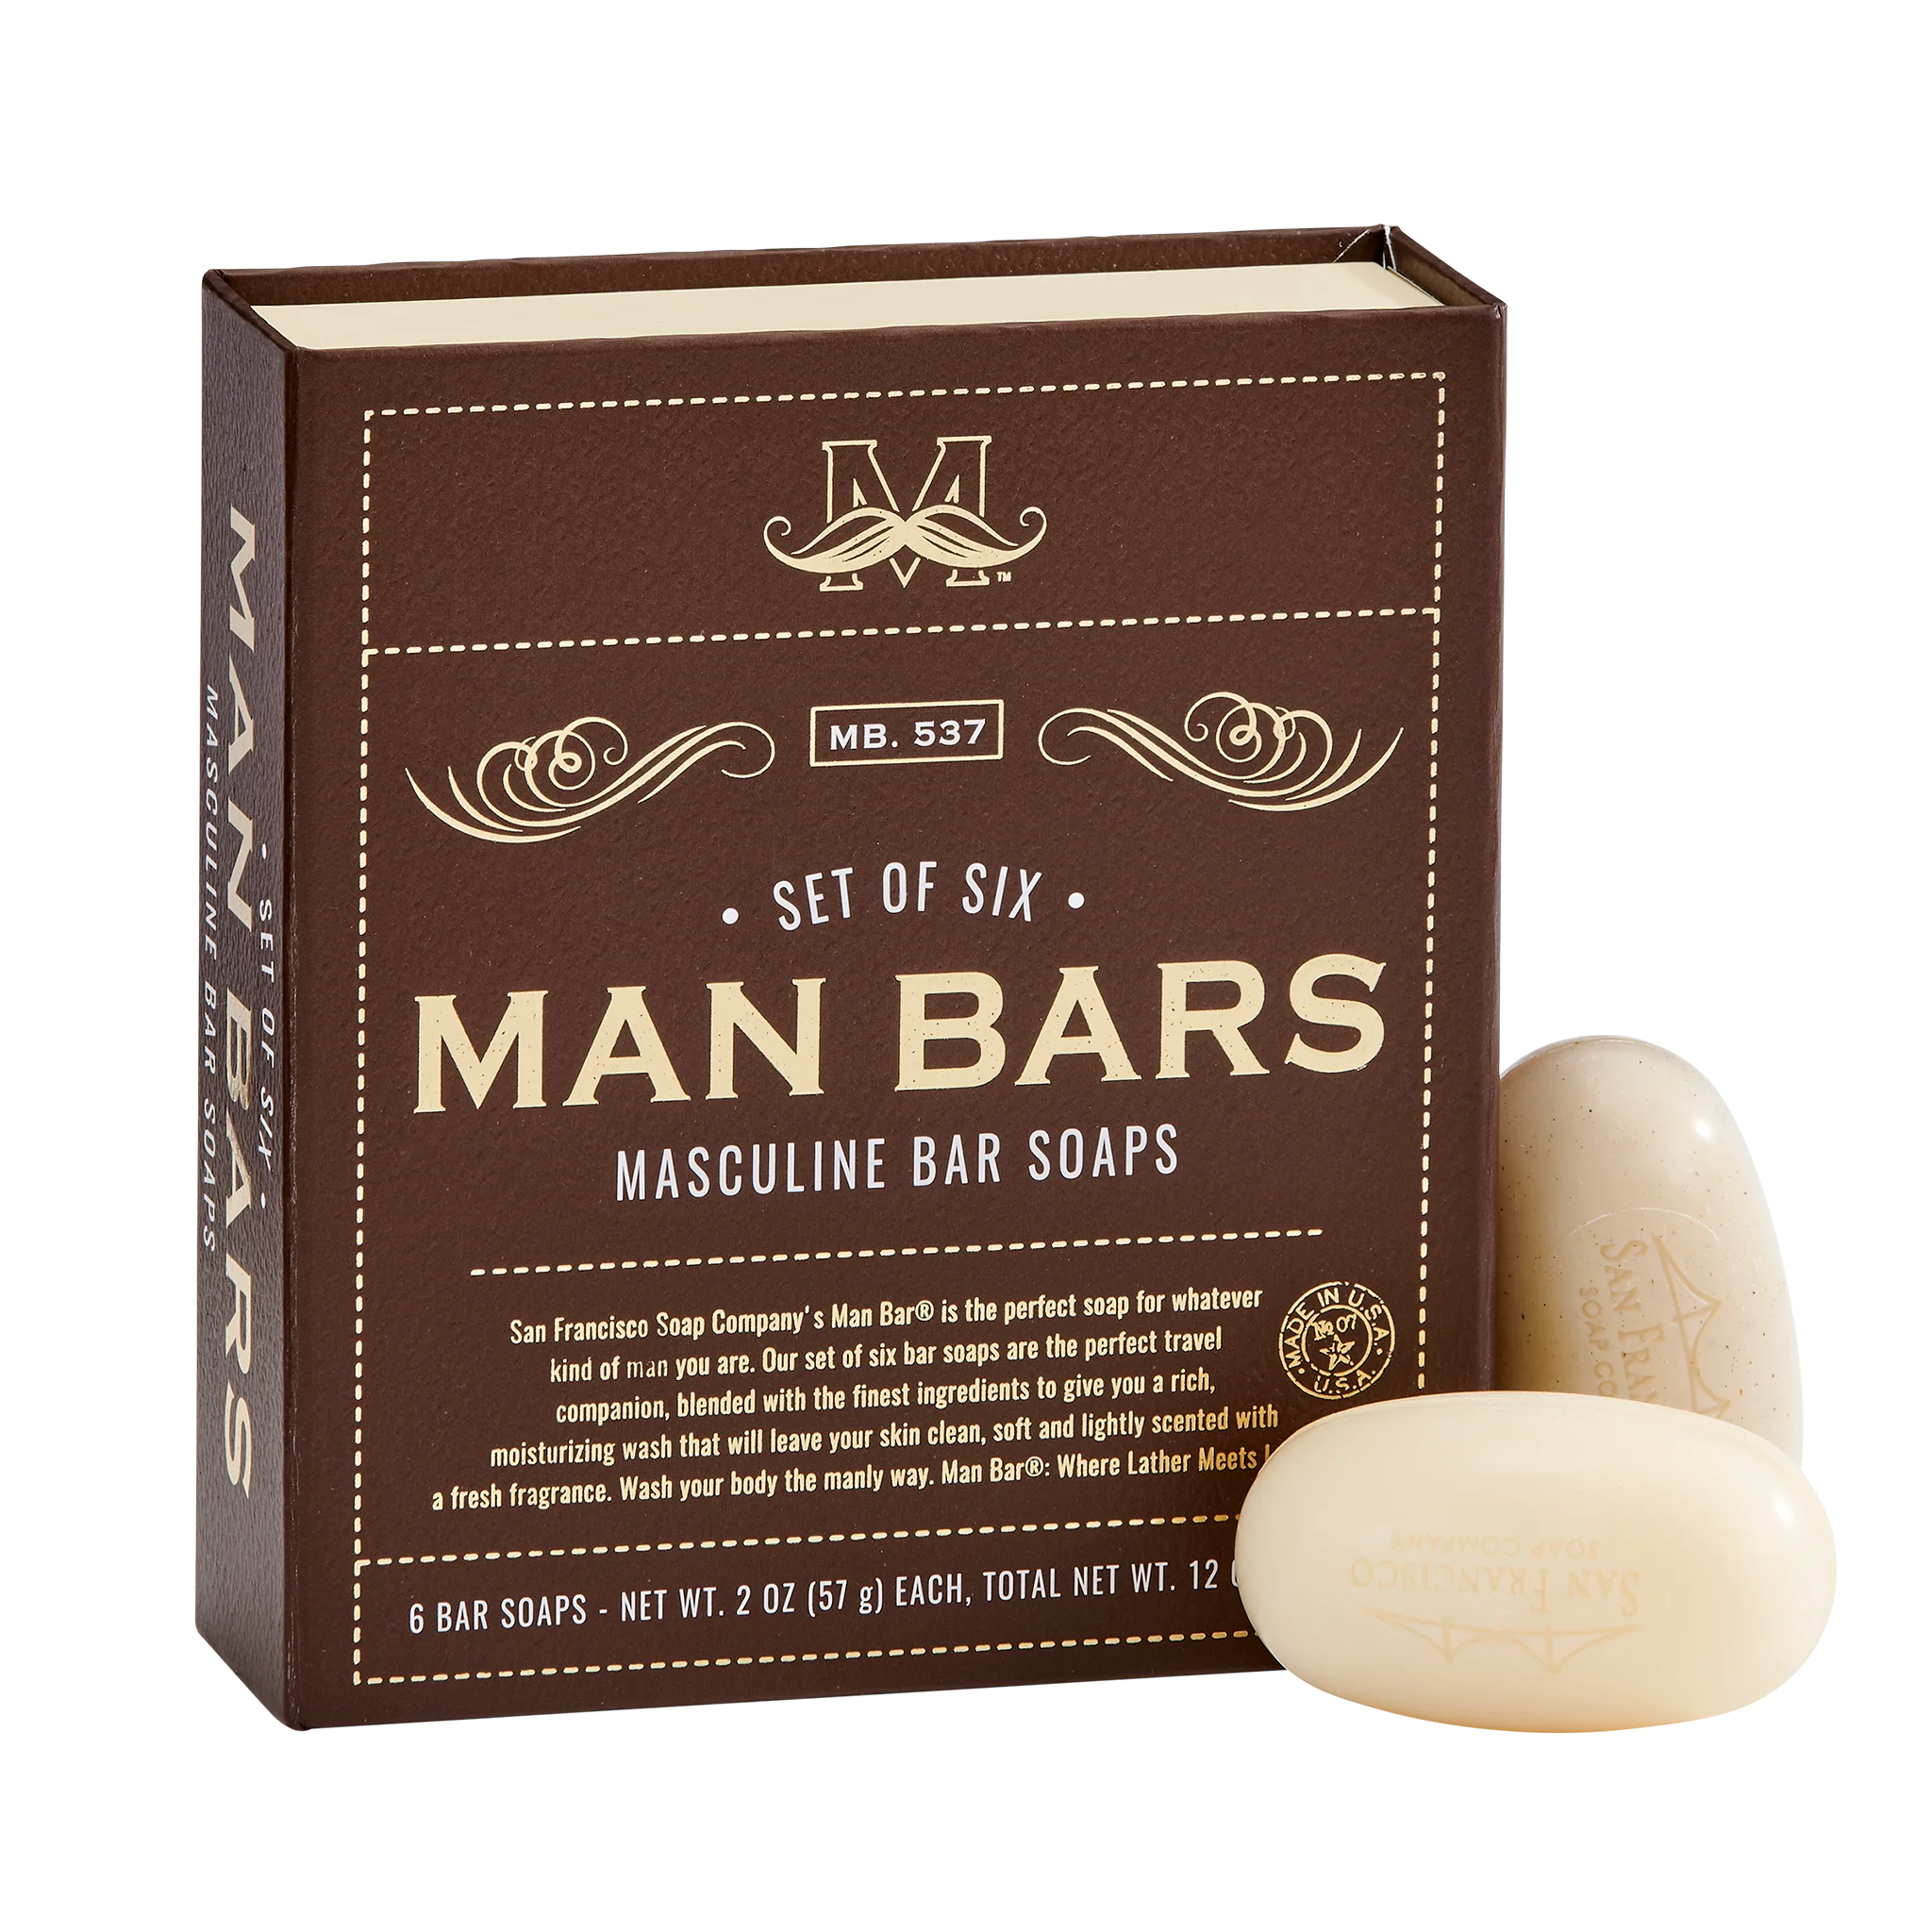 Man Bar 6 piece sampler set box with soaps